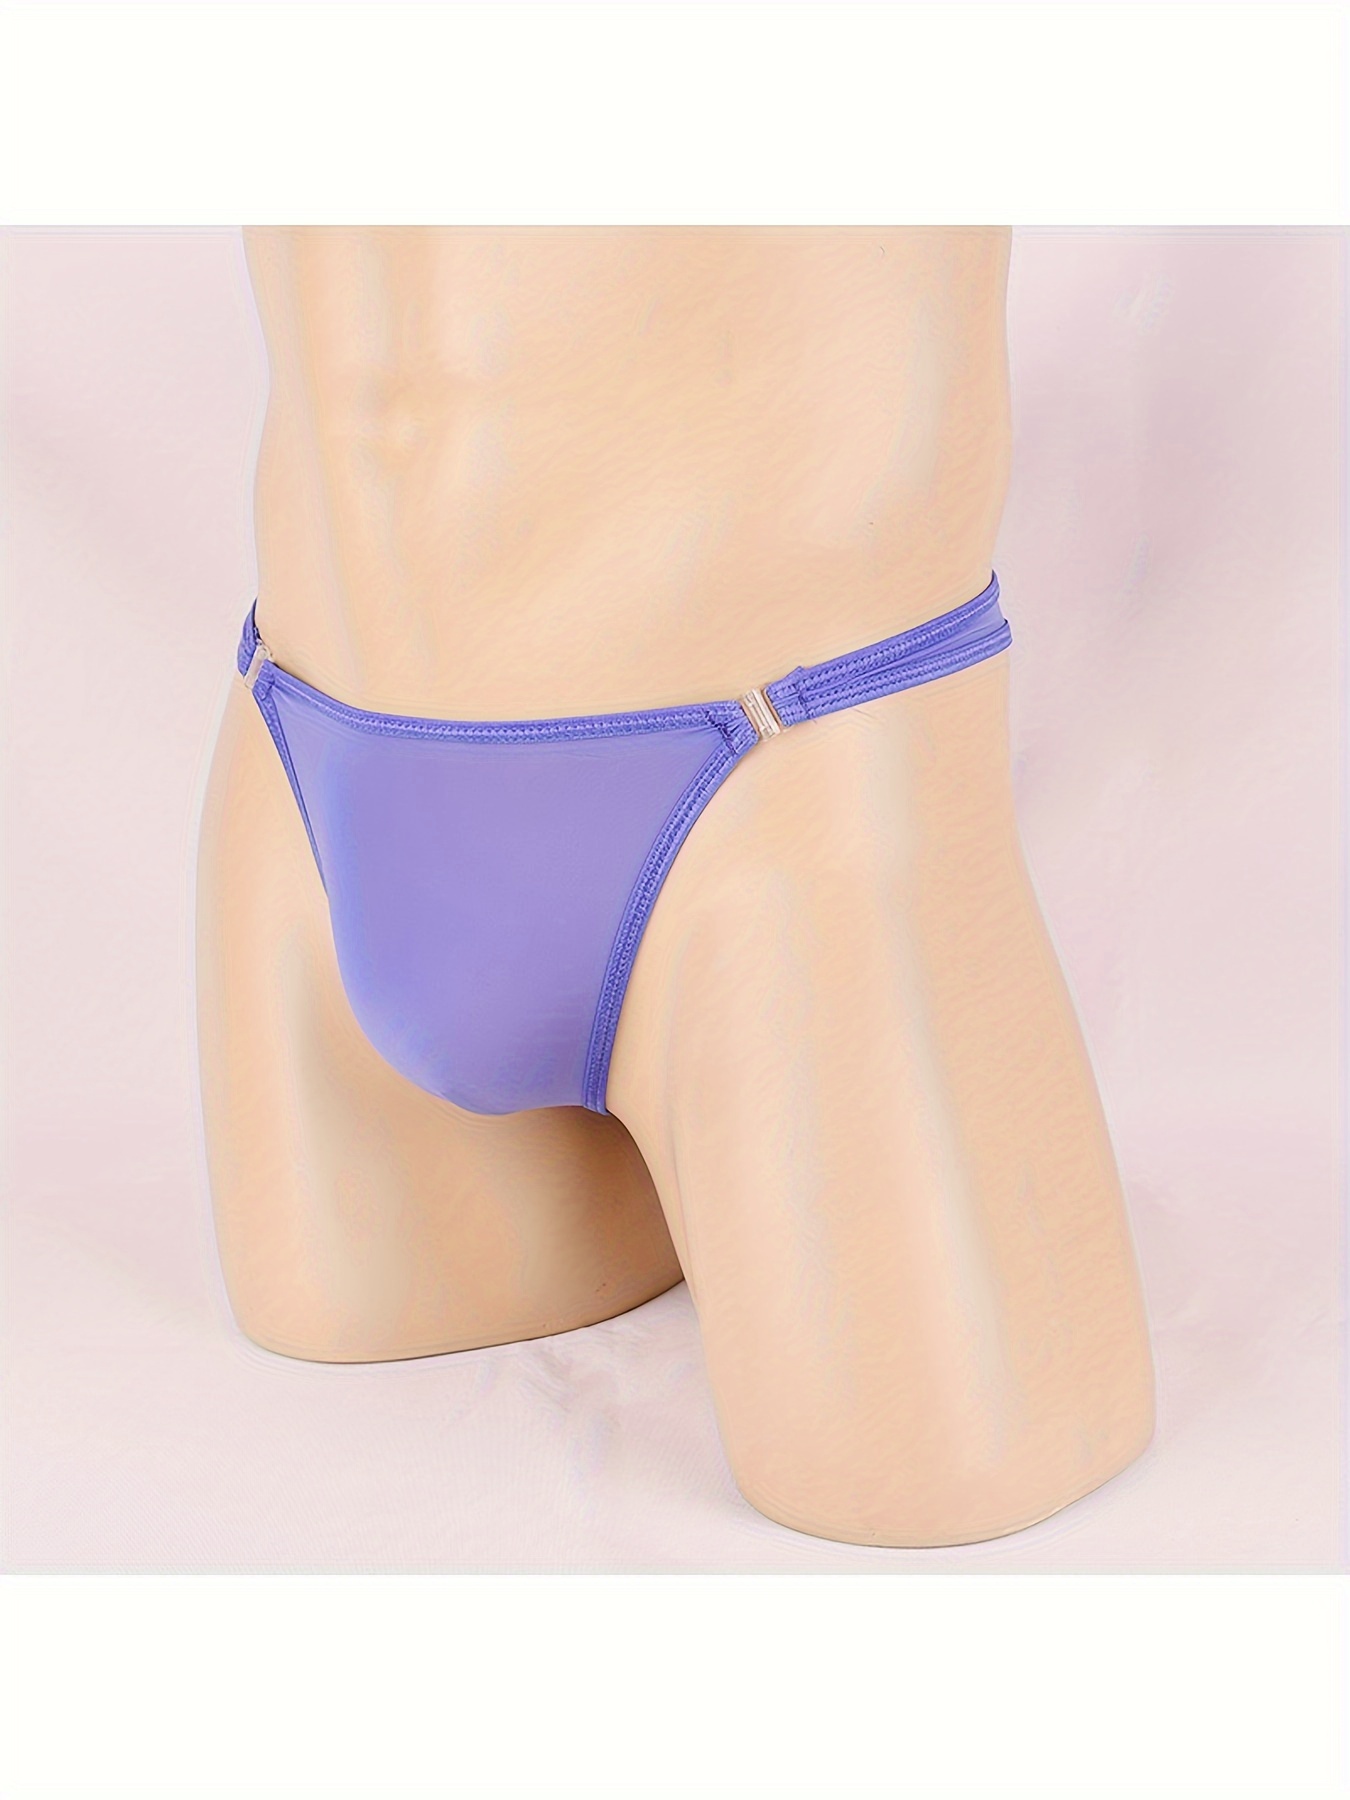 Transparent Panties Underwear Silk Briefs T back Sexy G-string